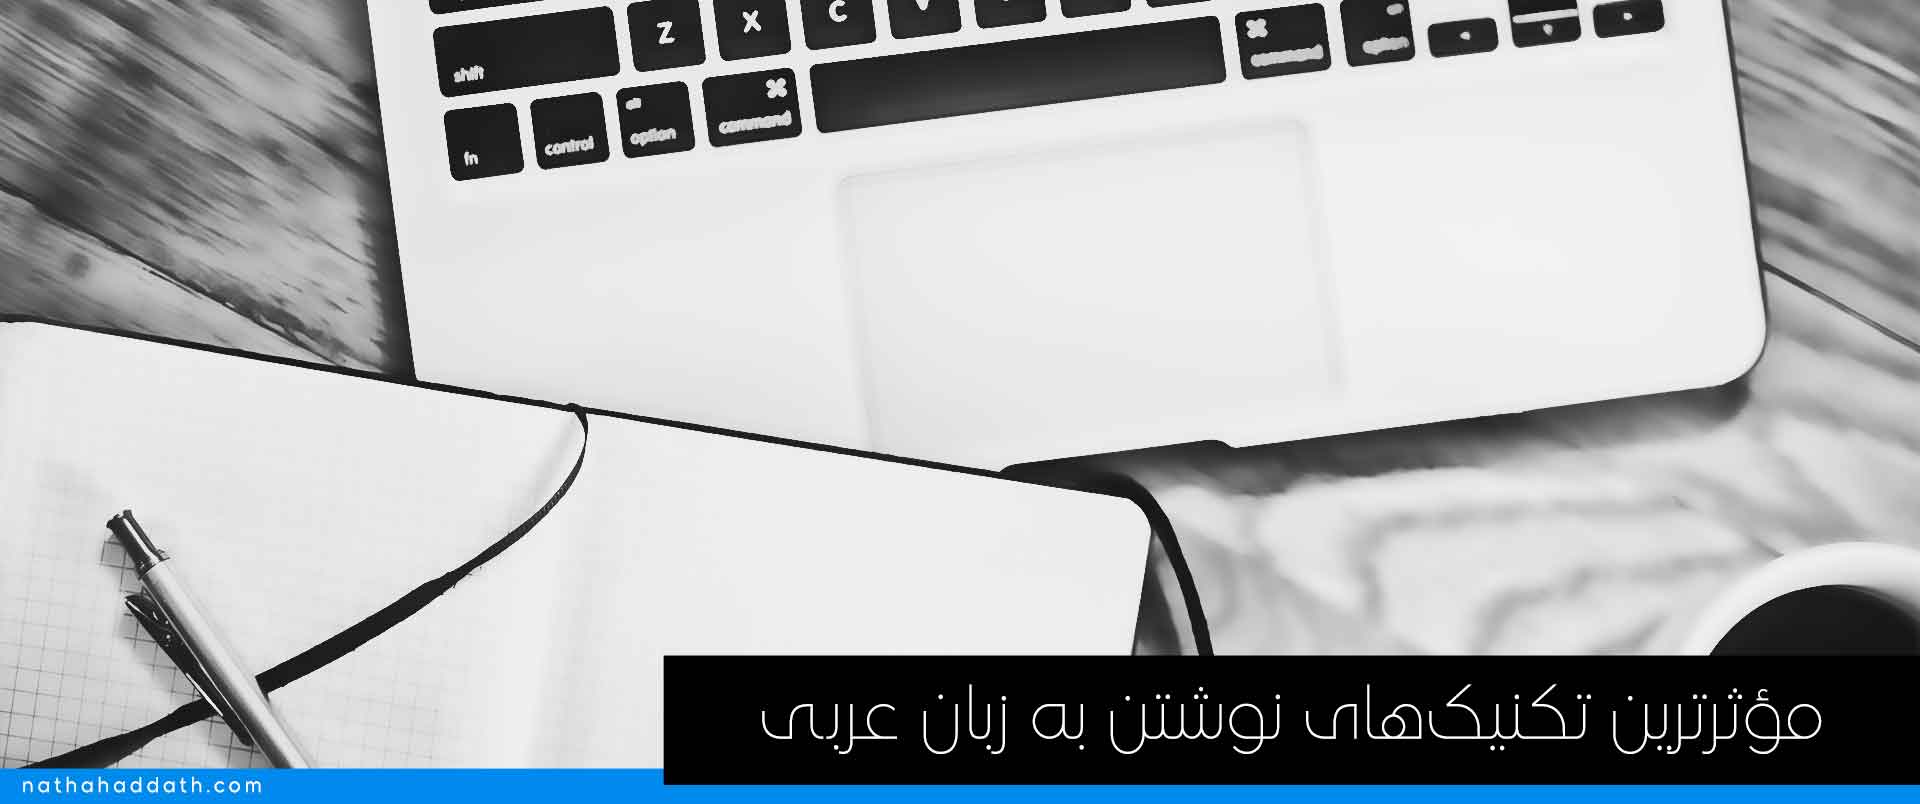 نوشتن به زبان عربی